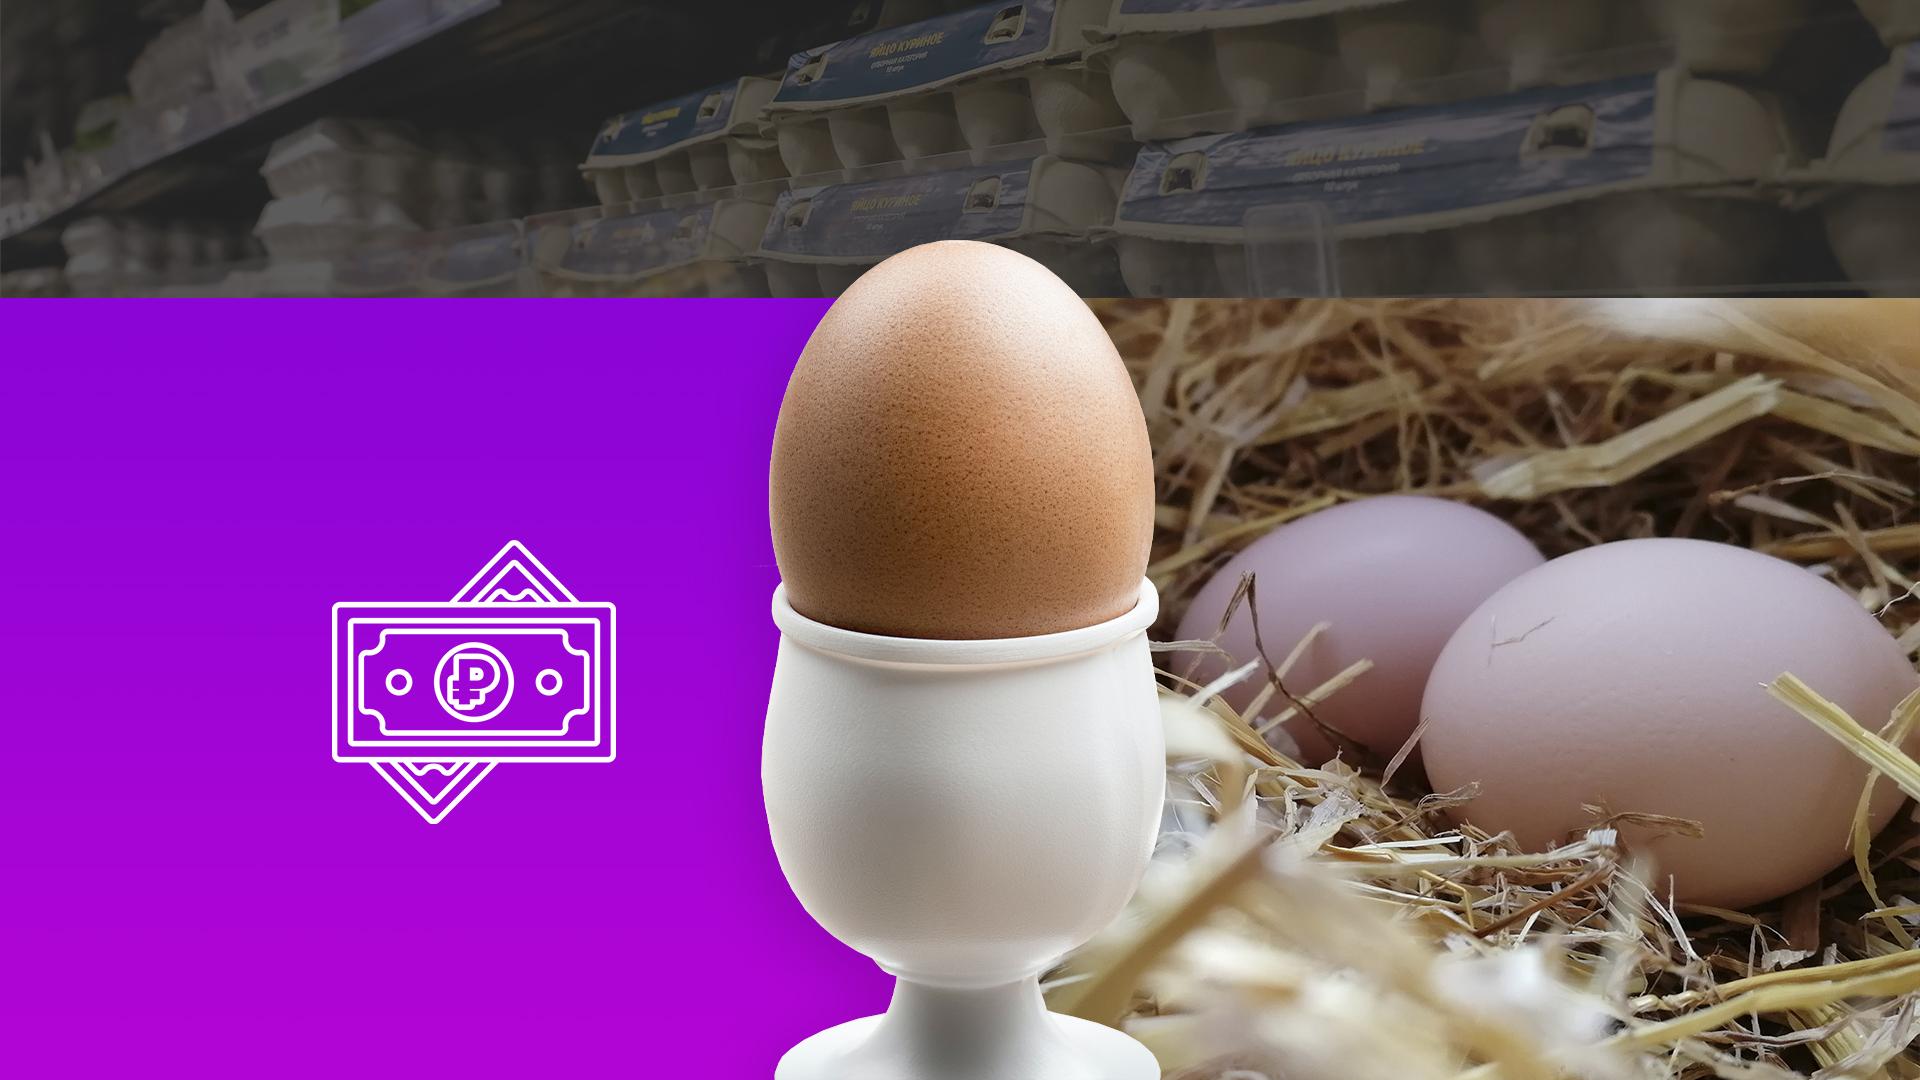 Этот способ поможет почистить яйцо за 1 одну минуту идеально - видео | Новости РБК Украина